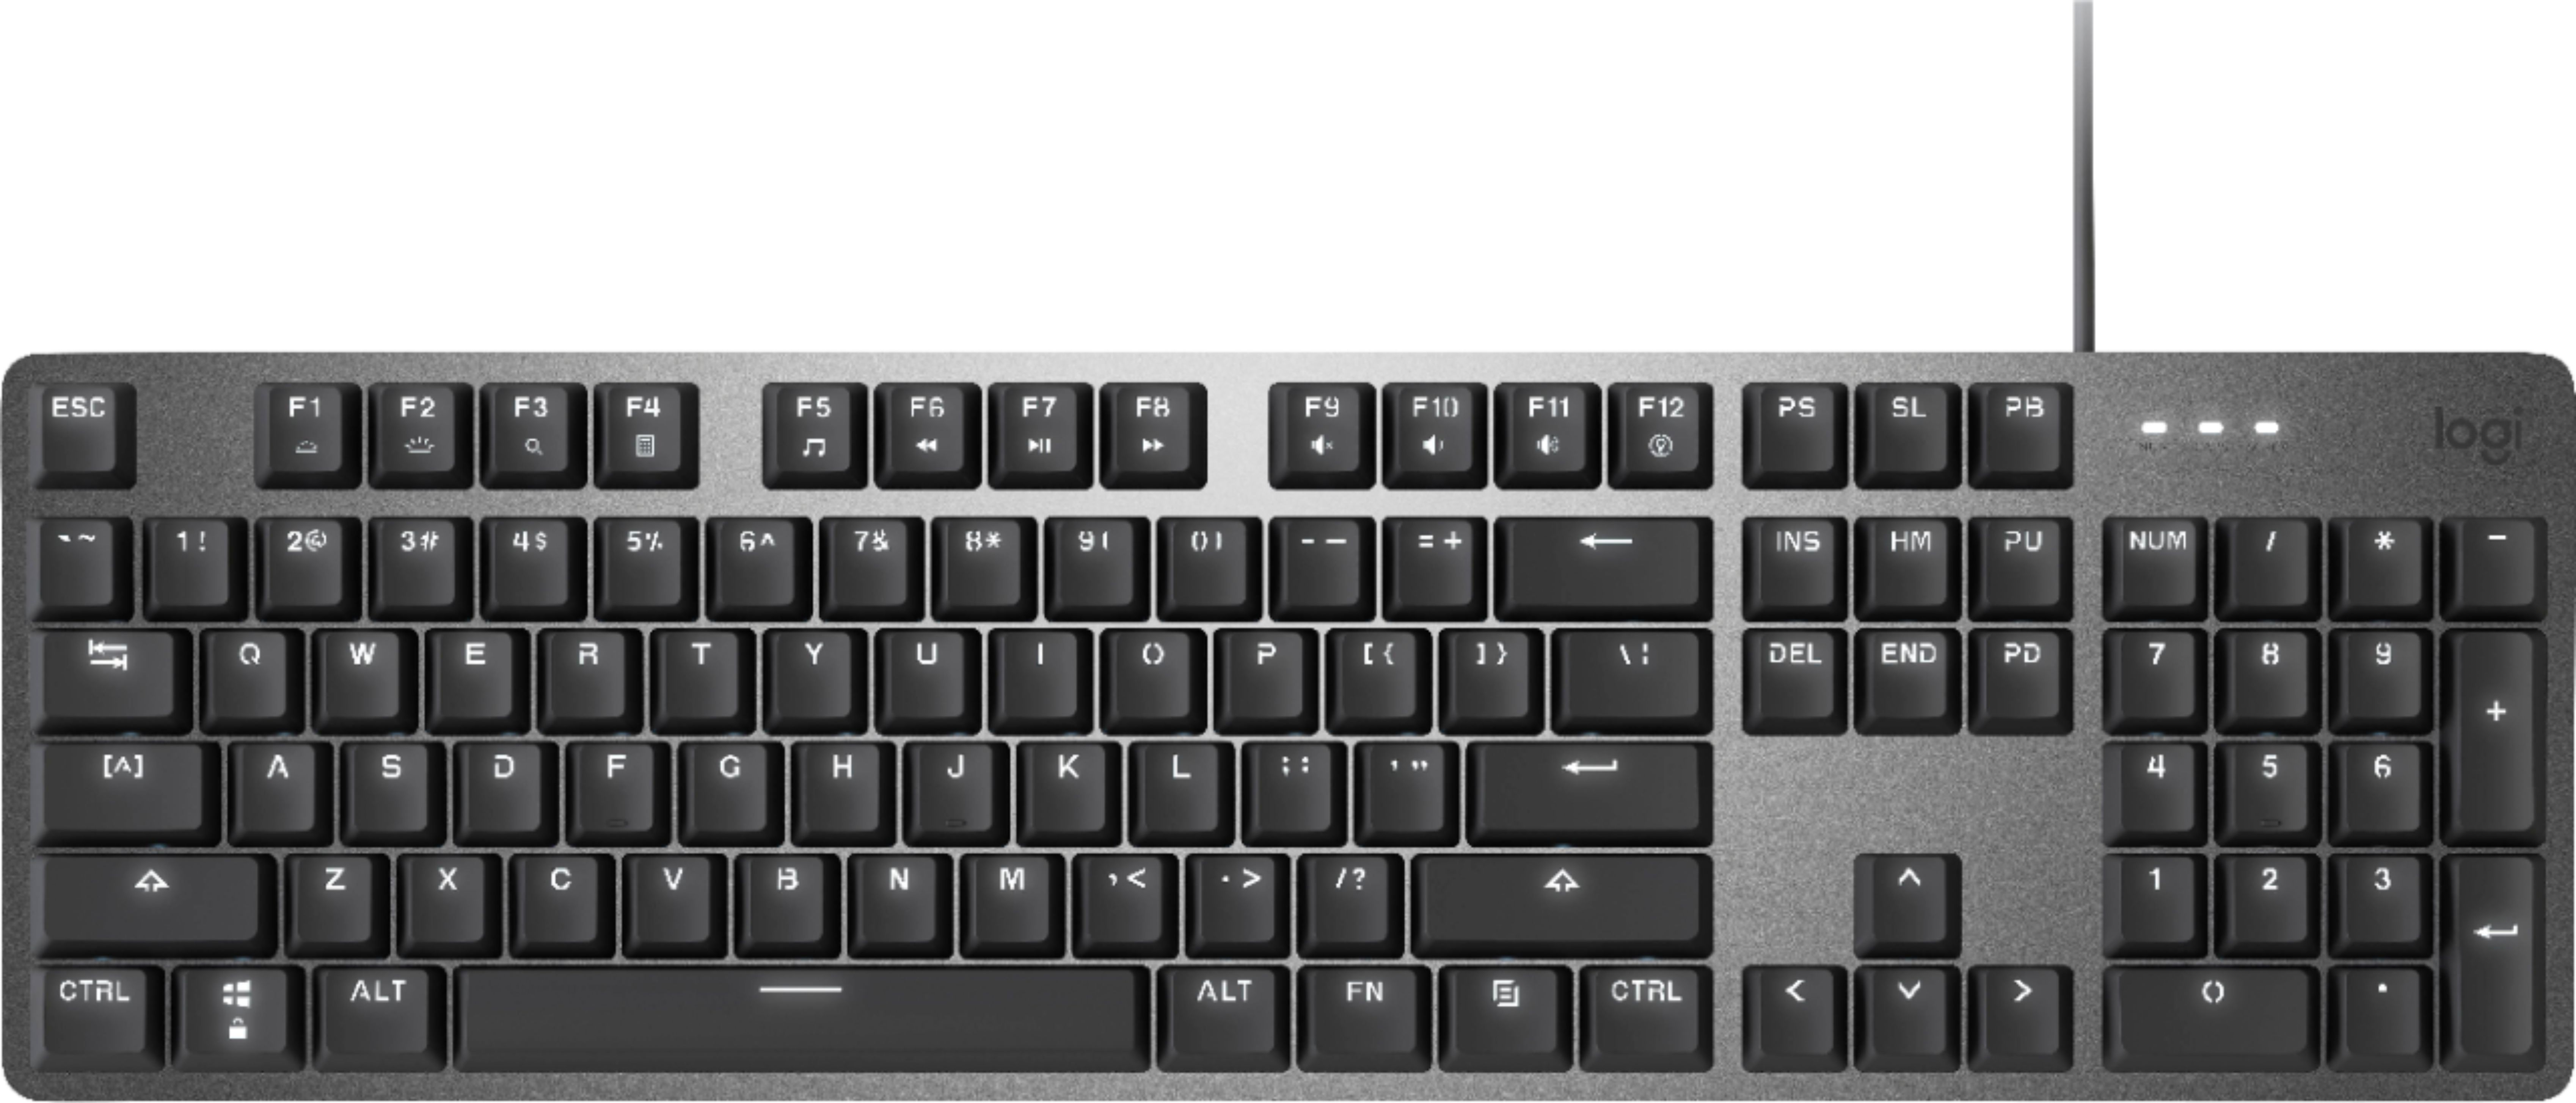 Logitech - K845 Full-size Wired Mechanical Linear Keyboard